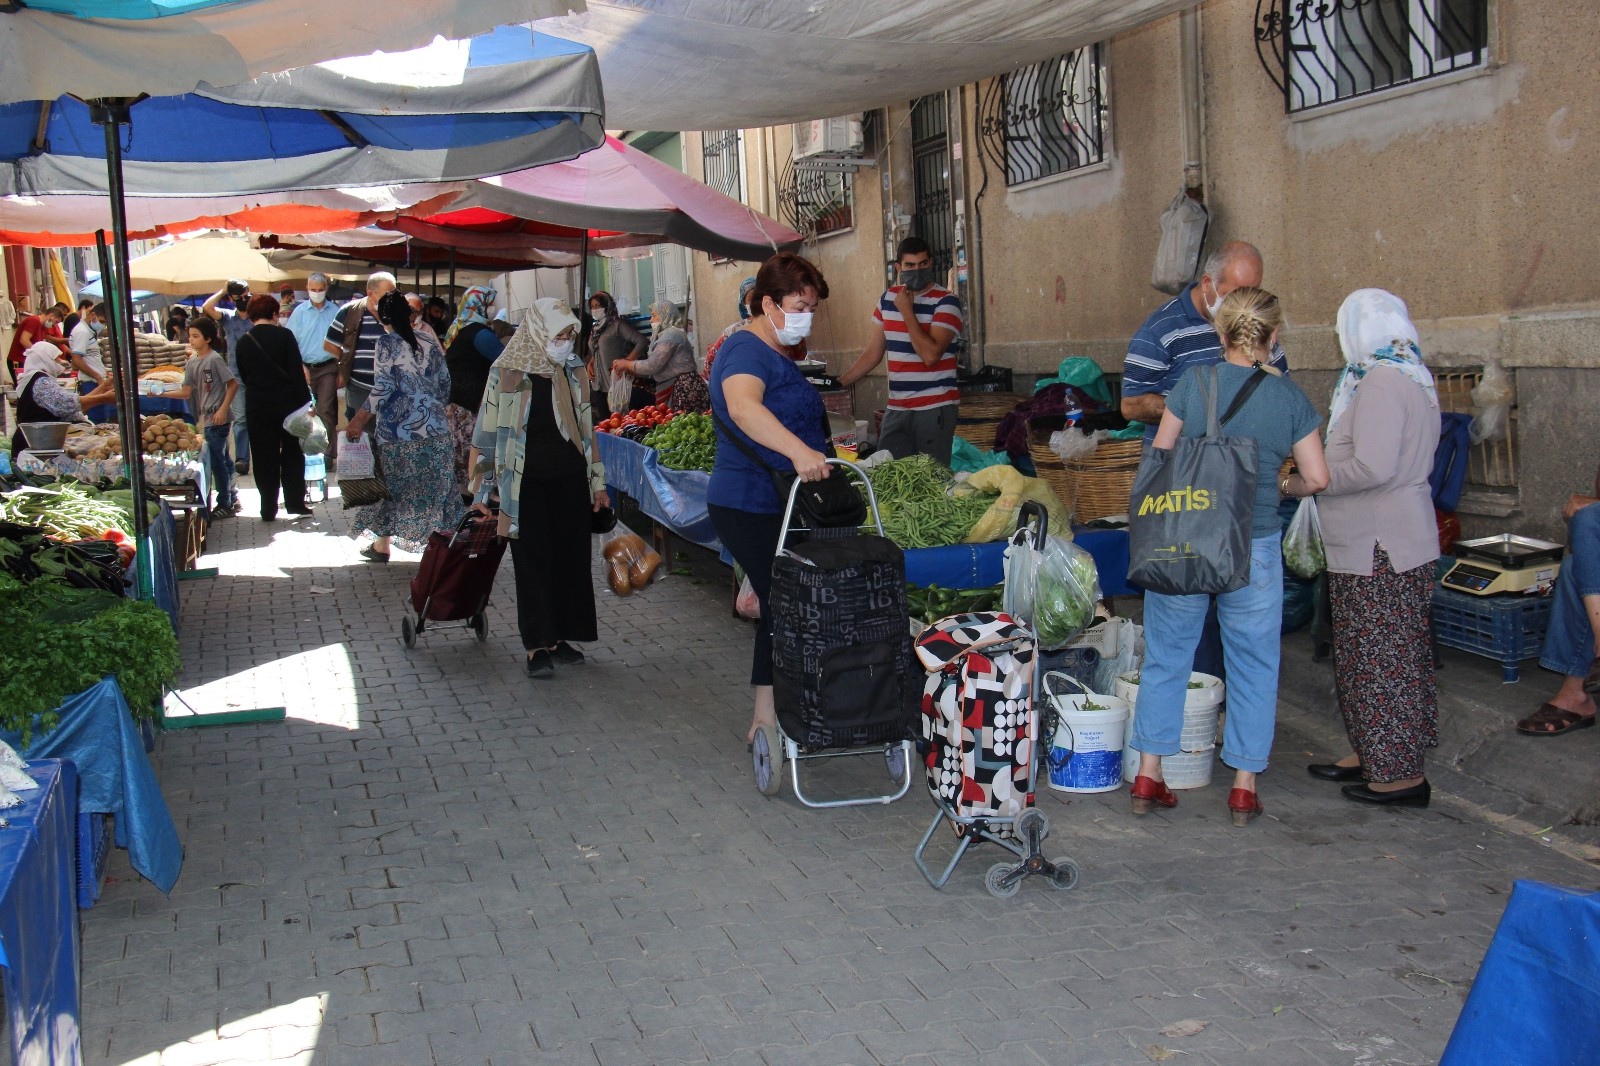 Efeler’de pazar yerleri belli oldu